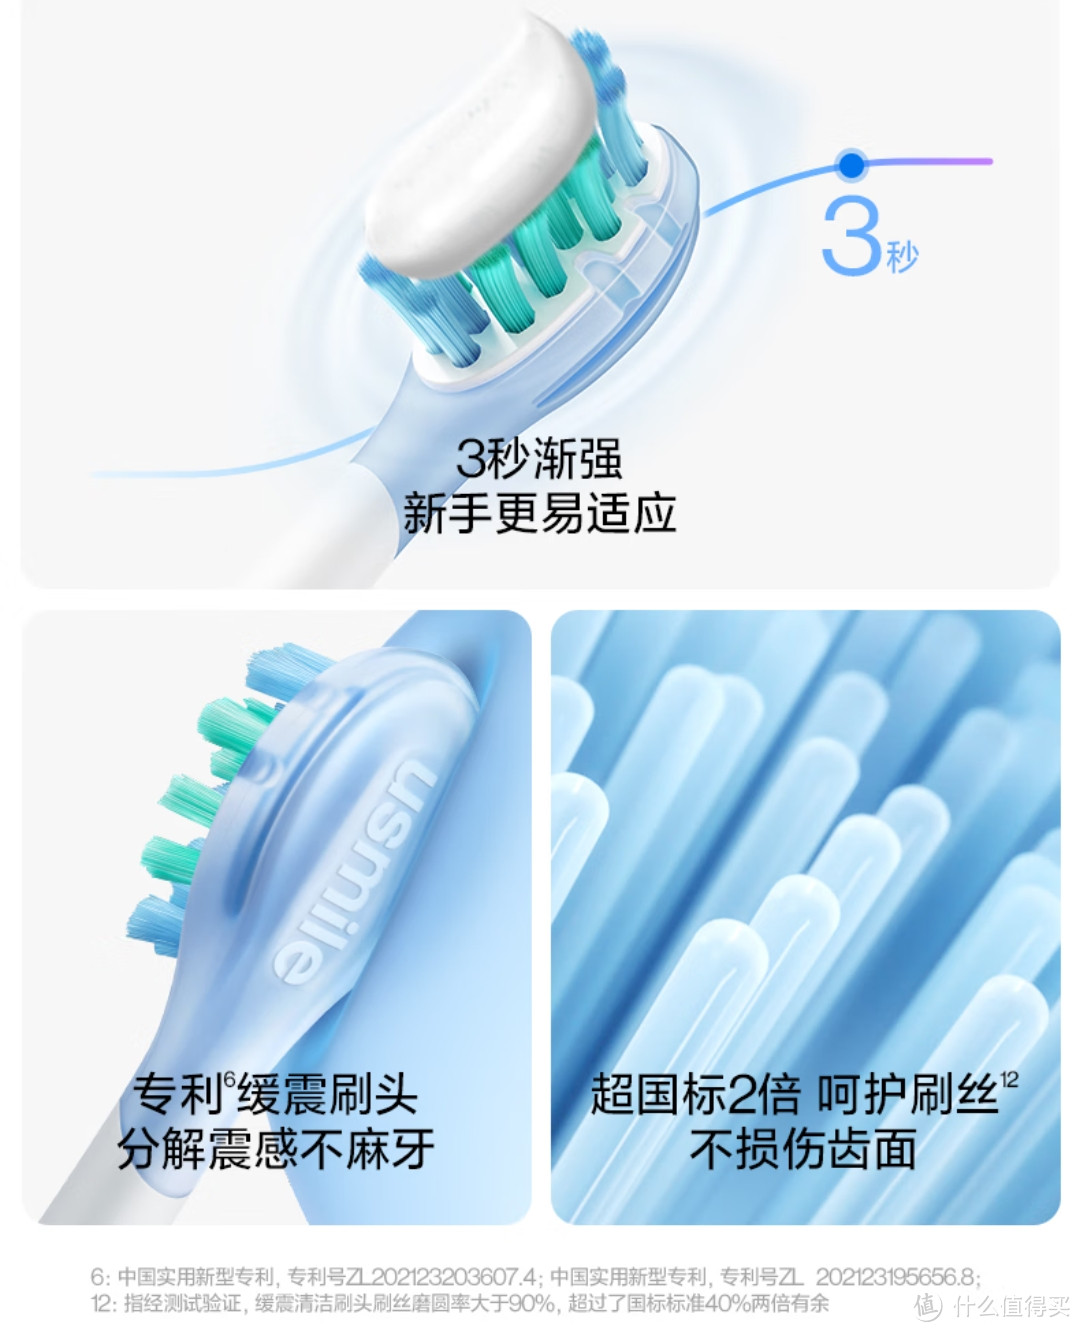 选择一支电动牙刷，注意的点，本文简单的介绍，如有需要可以收藏，选择时作为参考